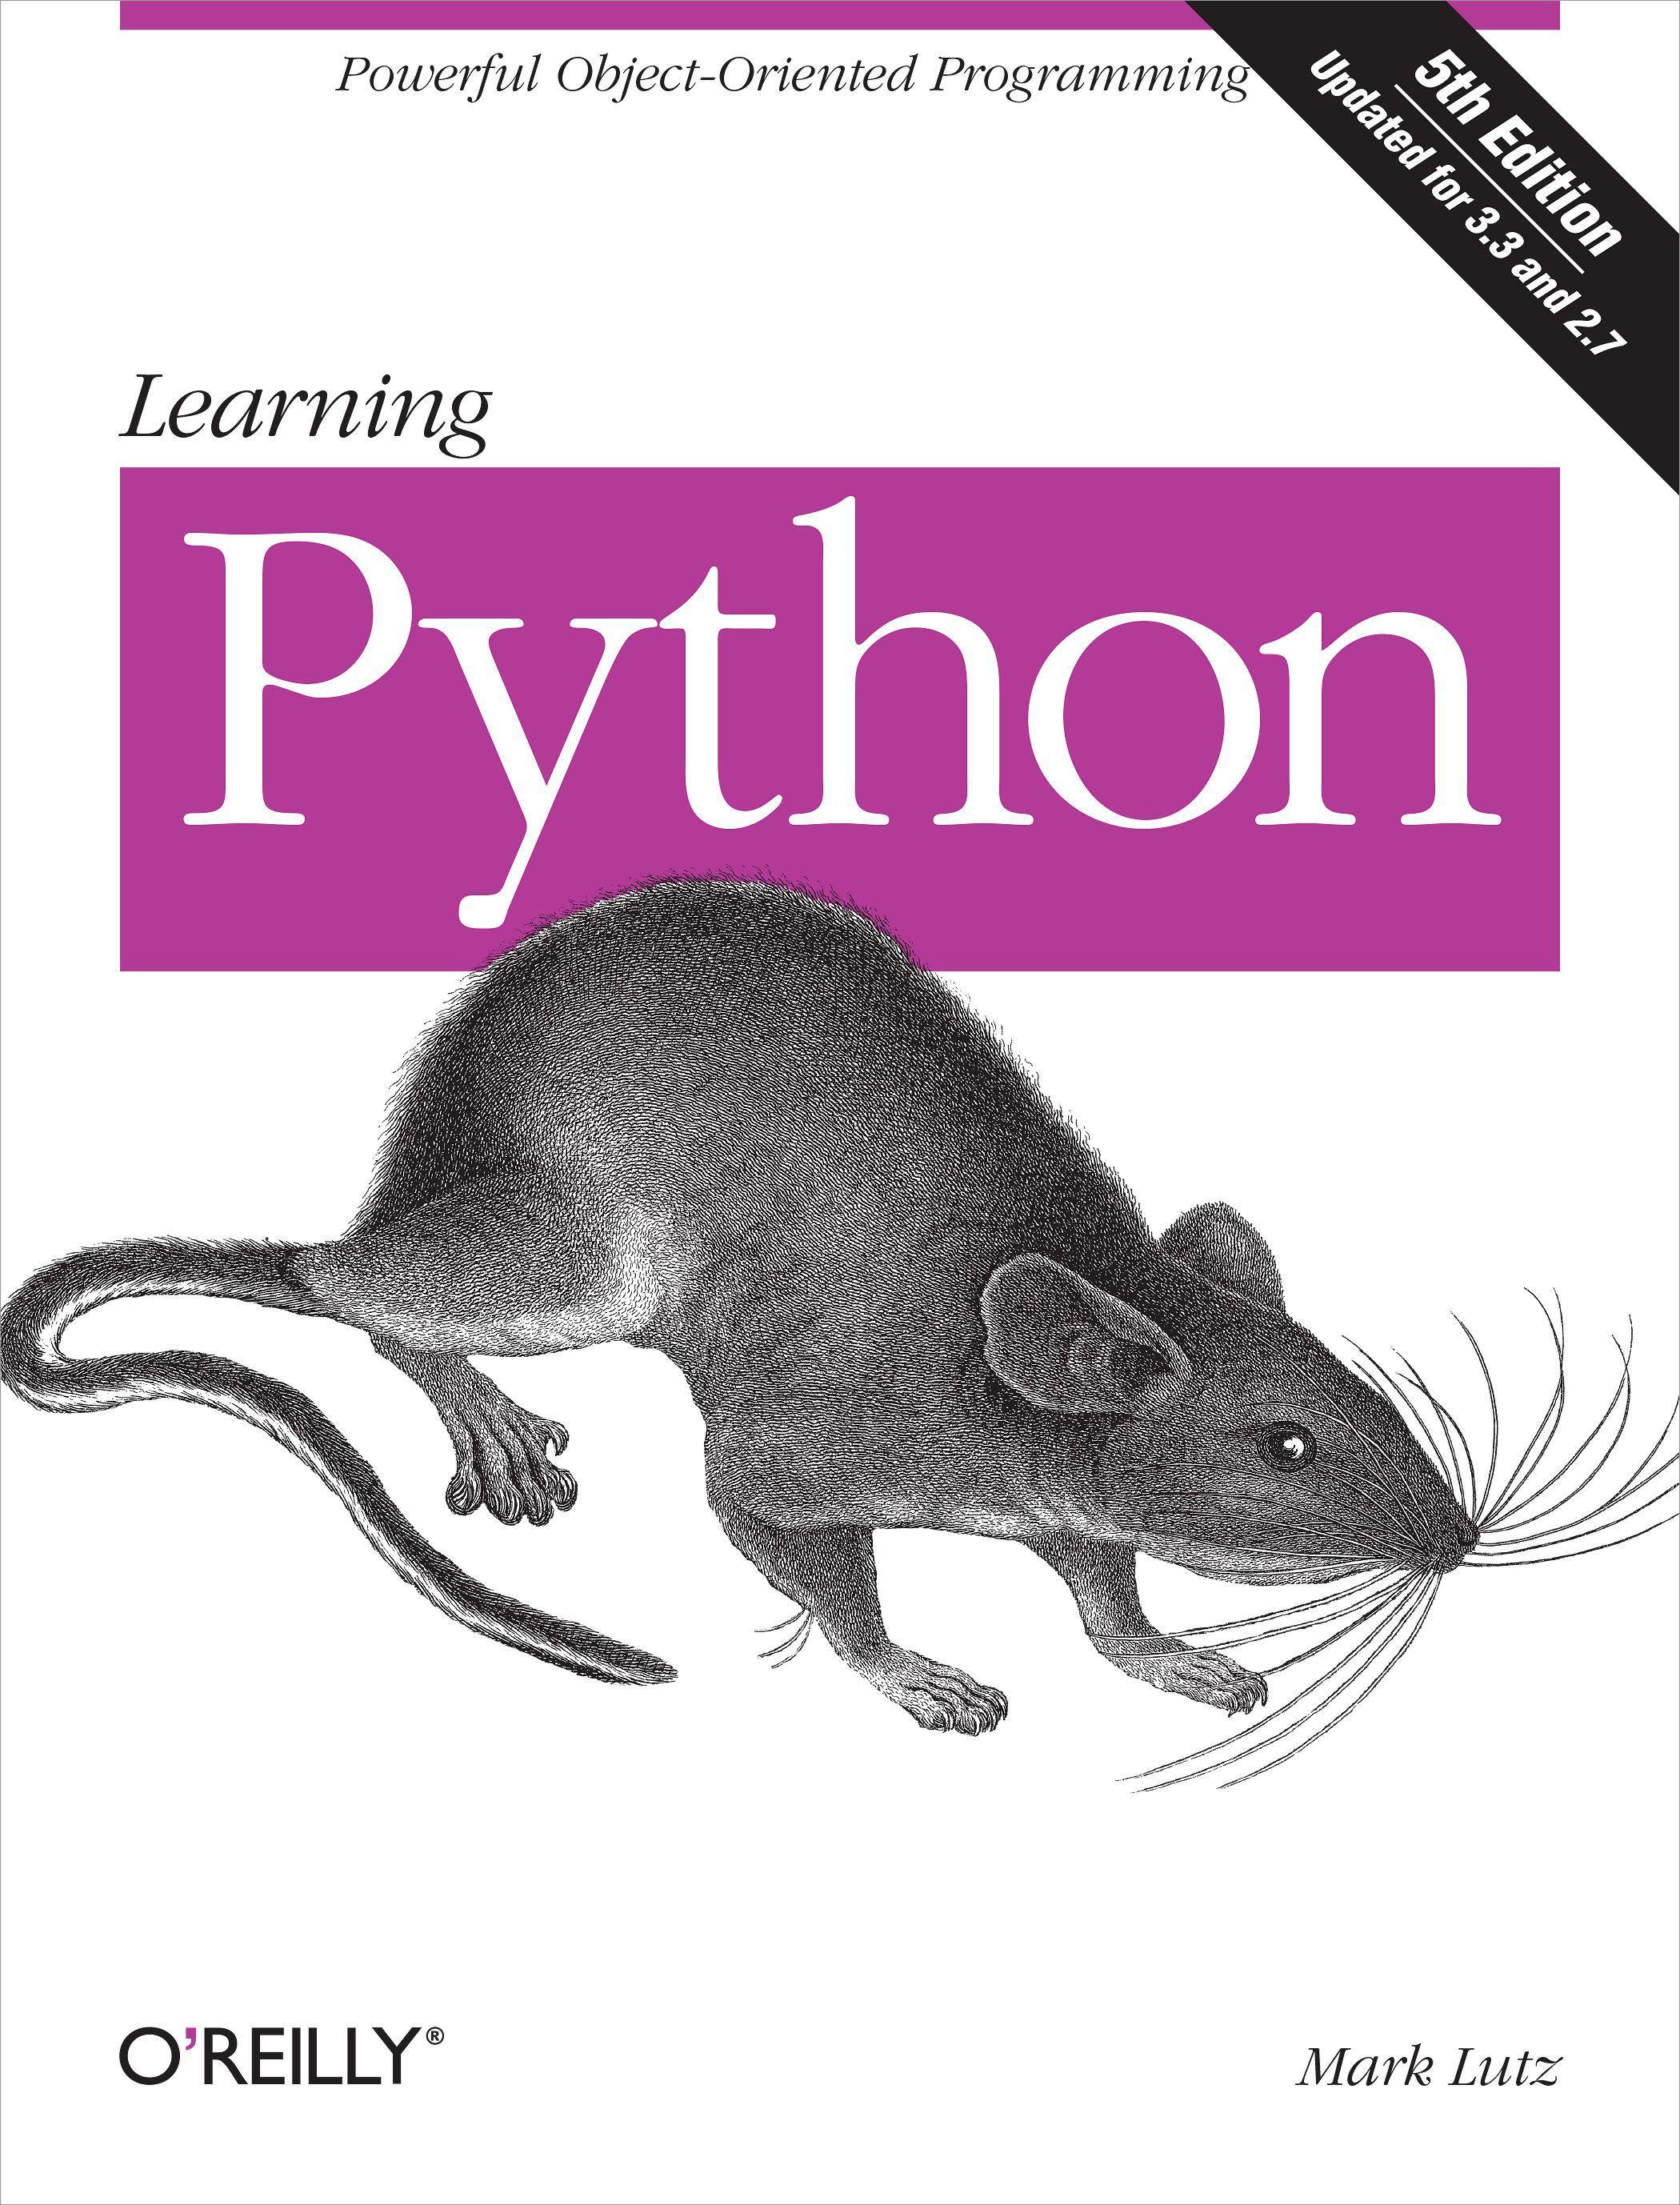 Learning Python / Mark Lutz / Taschenbuch / XLIX / Englisch / 2013 / O'Reilly Media / EAN 9781449355739 - Lutz, Mark